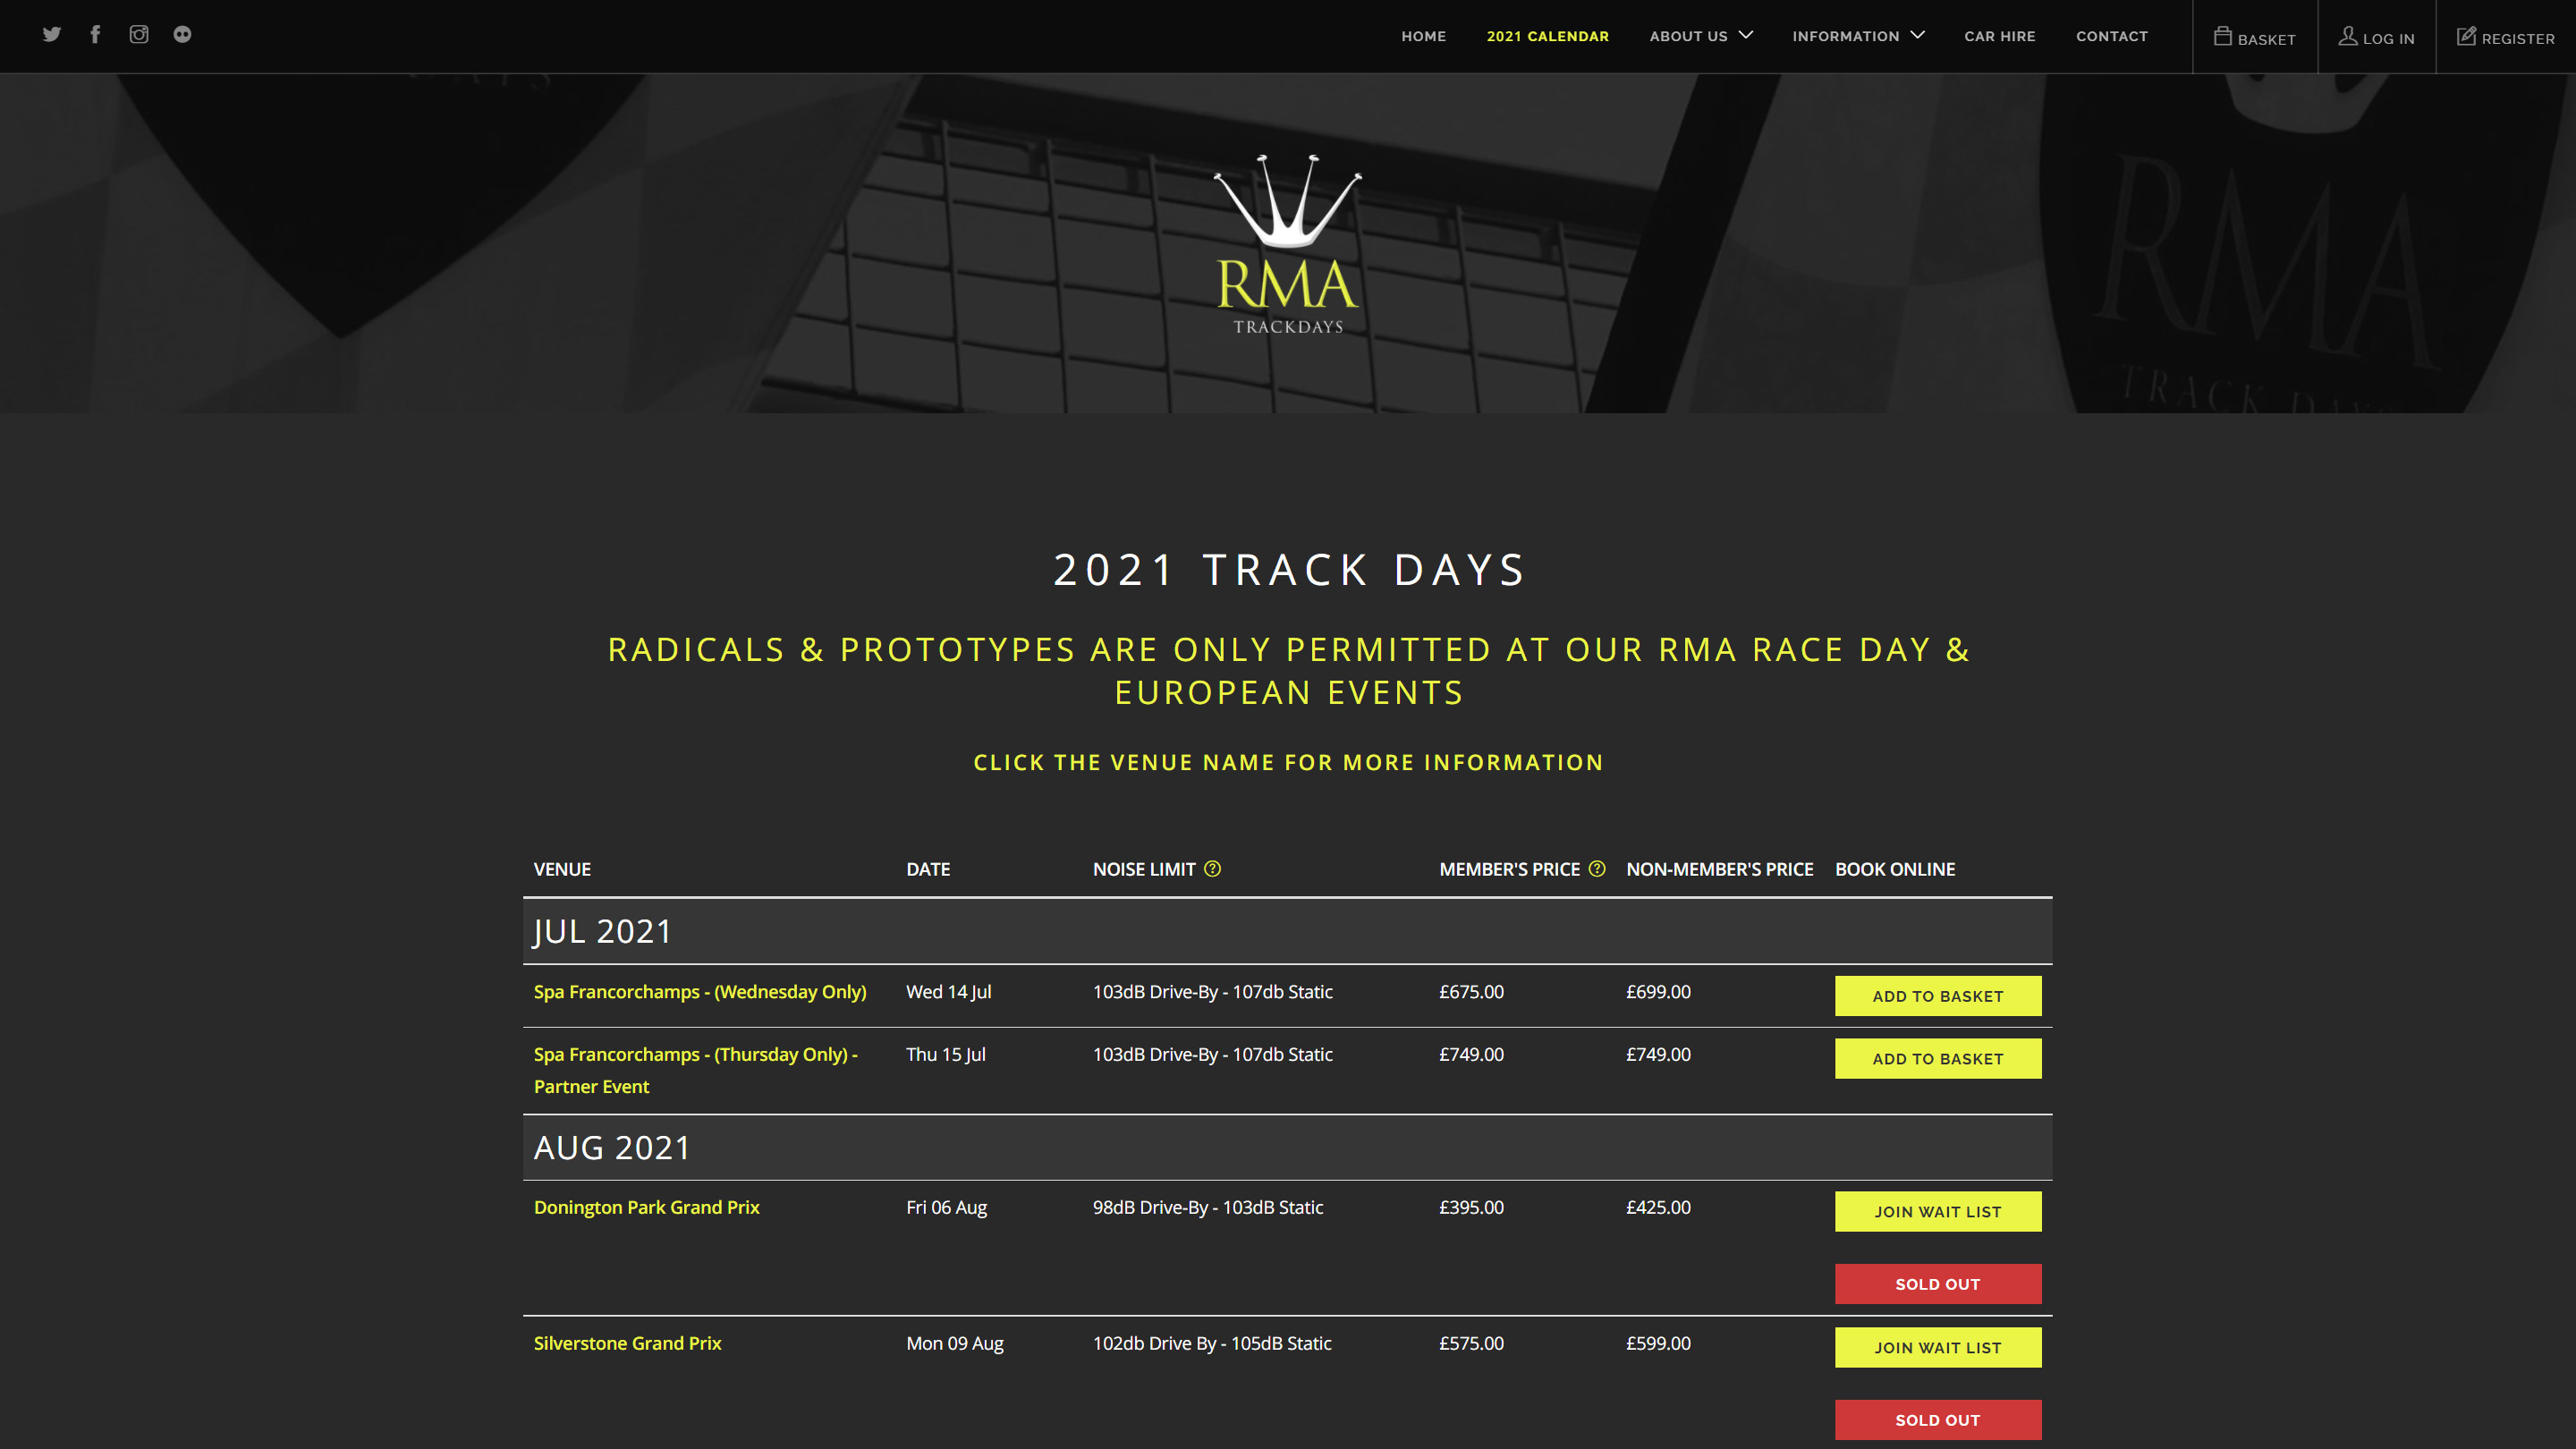 RMA Track Days